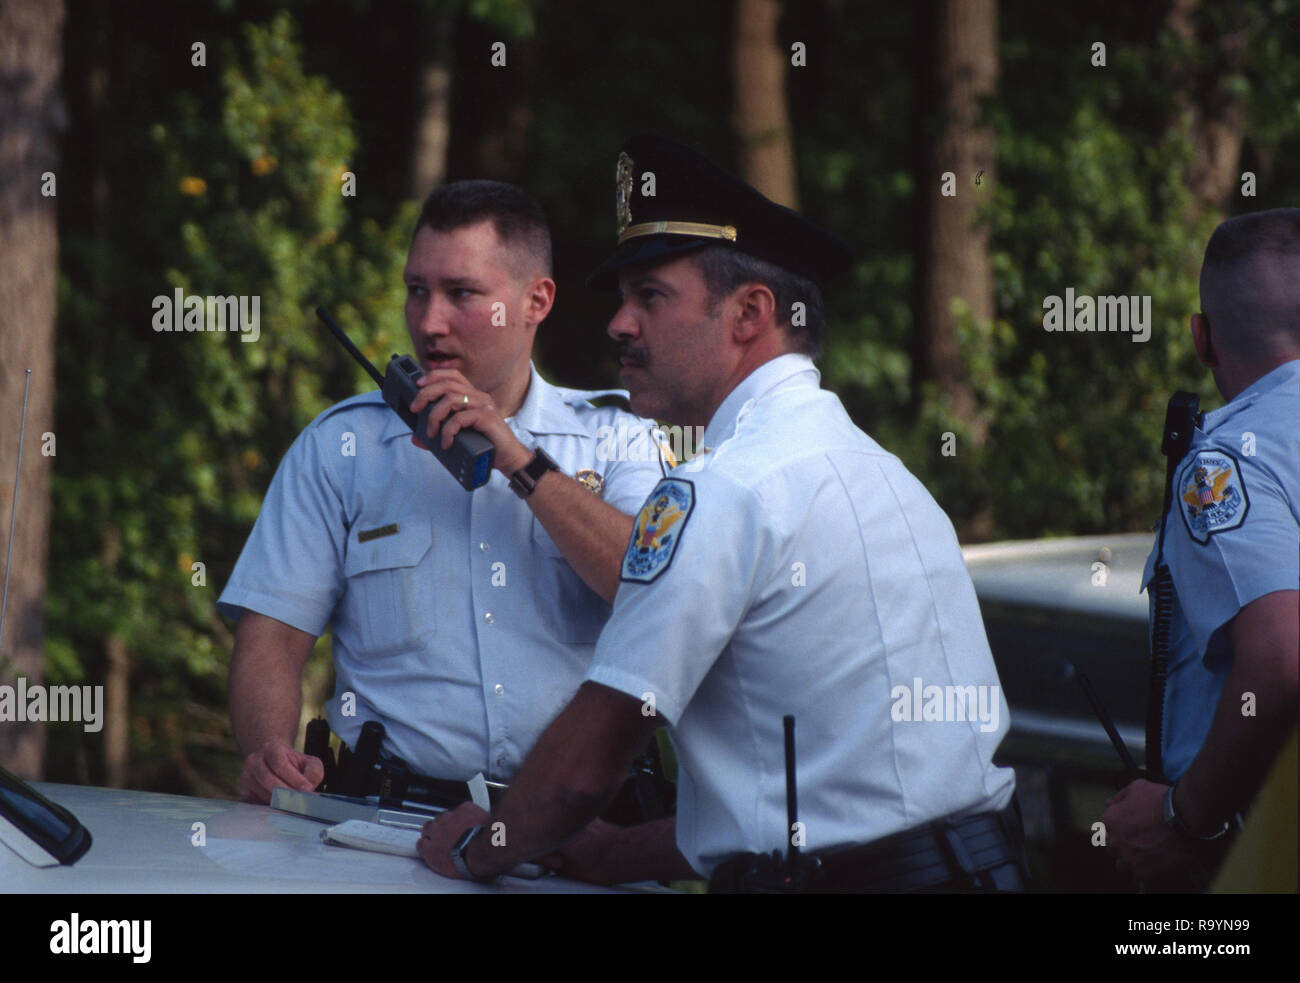 Deux policiers l'un à parler à la radio sur les lieux d'une urgence Banque D'Images